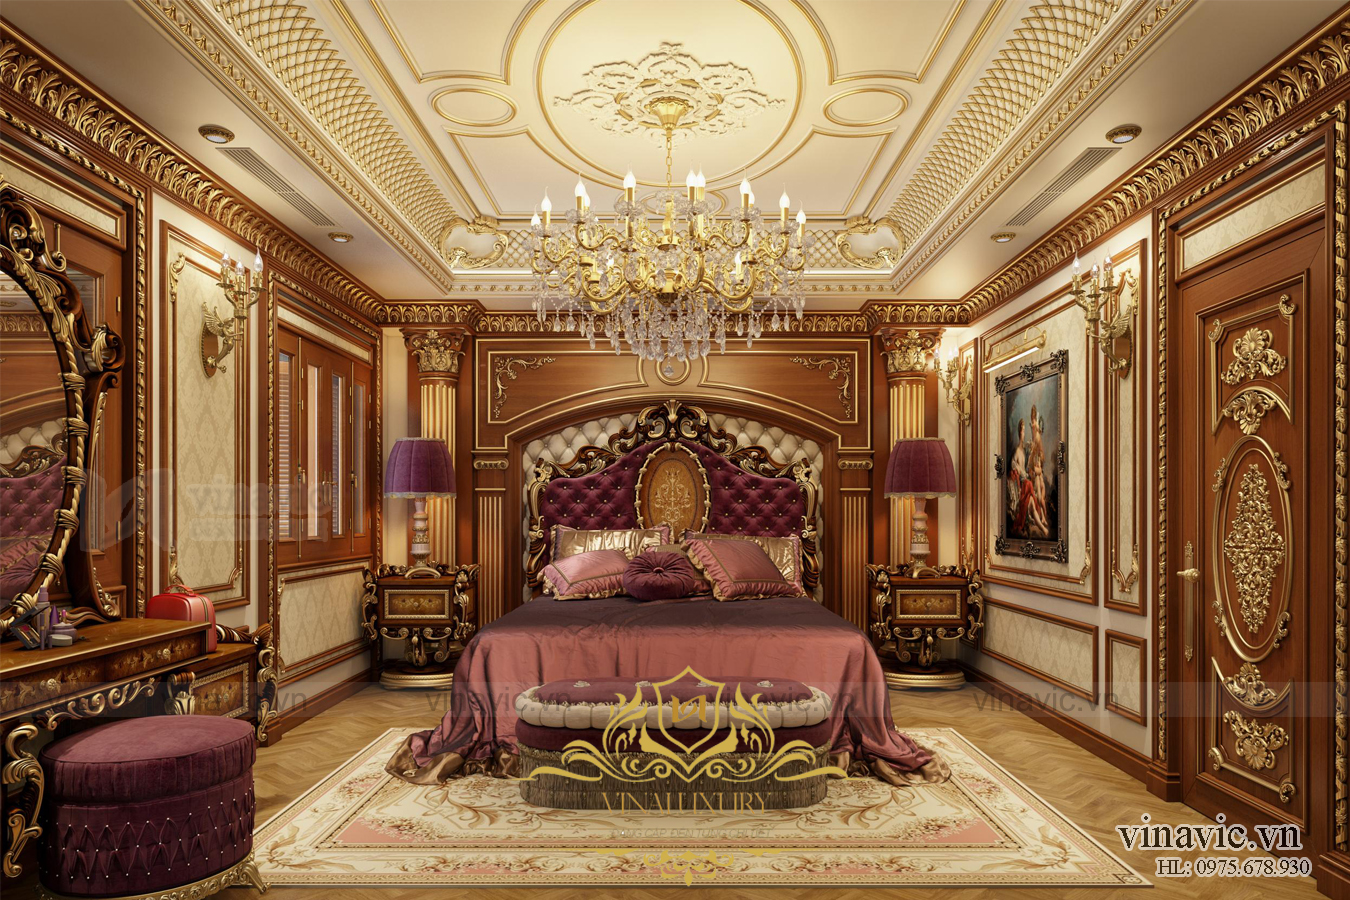 Phòng ngủ mang đậm chất vương giả của biệt thự cổ điển